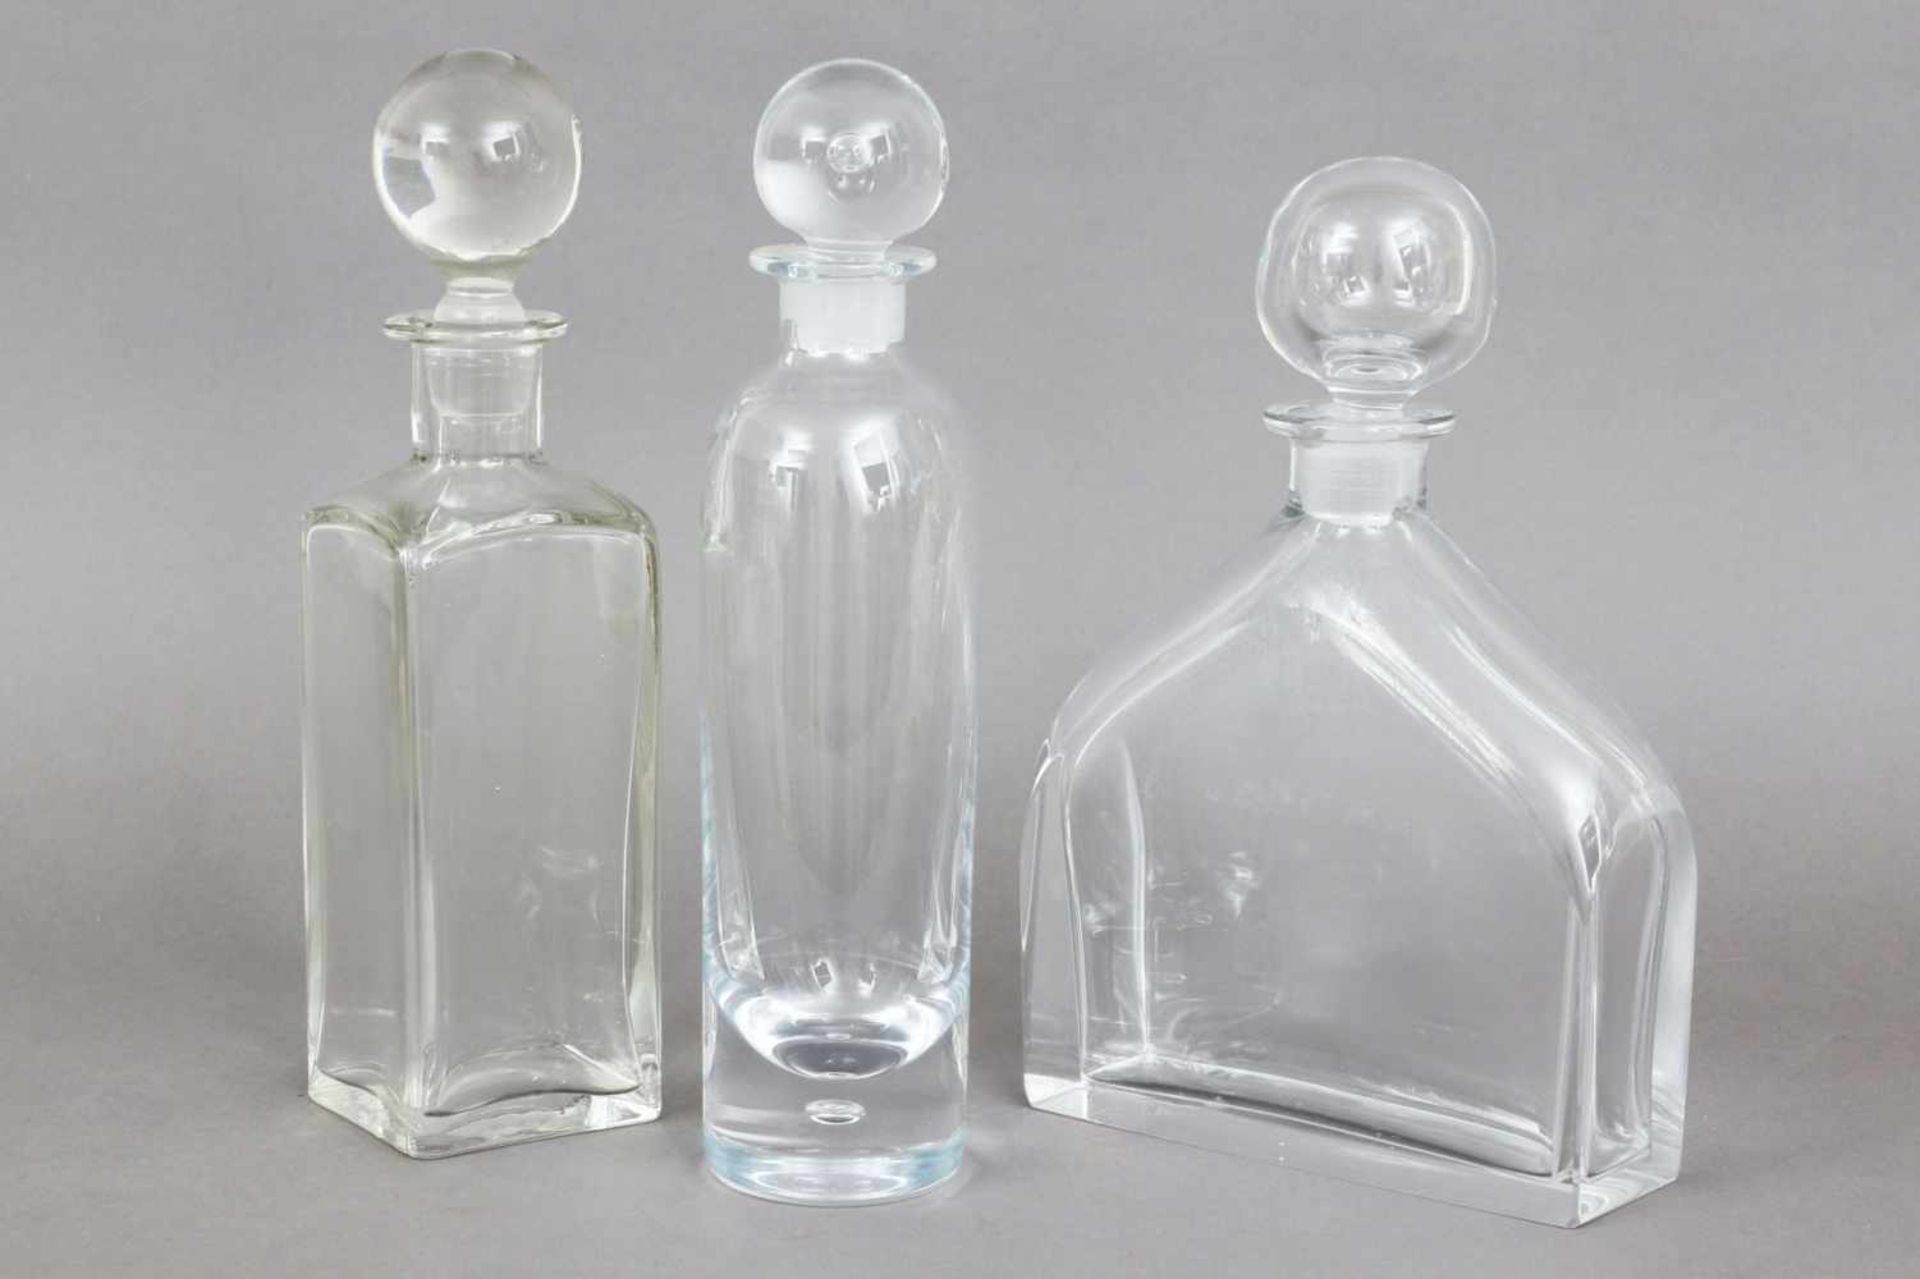 3 Kristallkaraffen mit Kugelstopfen farbloses Glas, diverse Formen (zylindrisch, hocheckig und